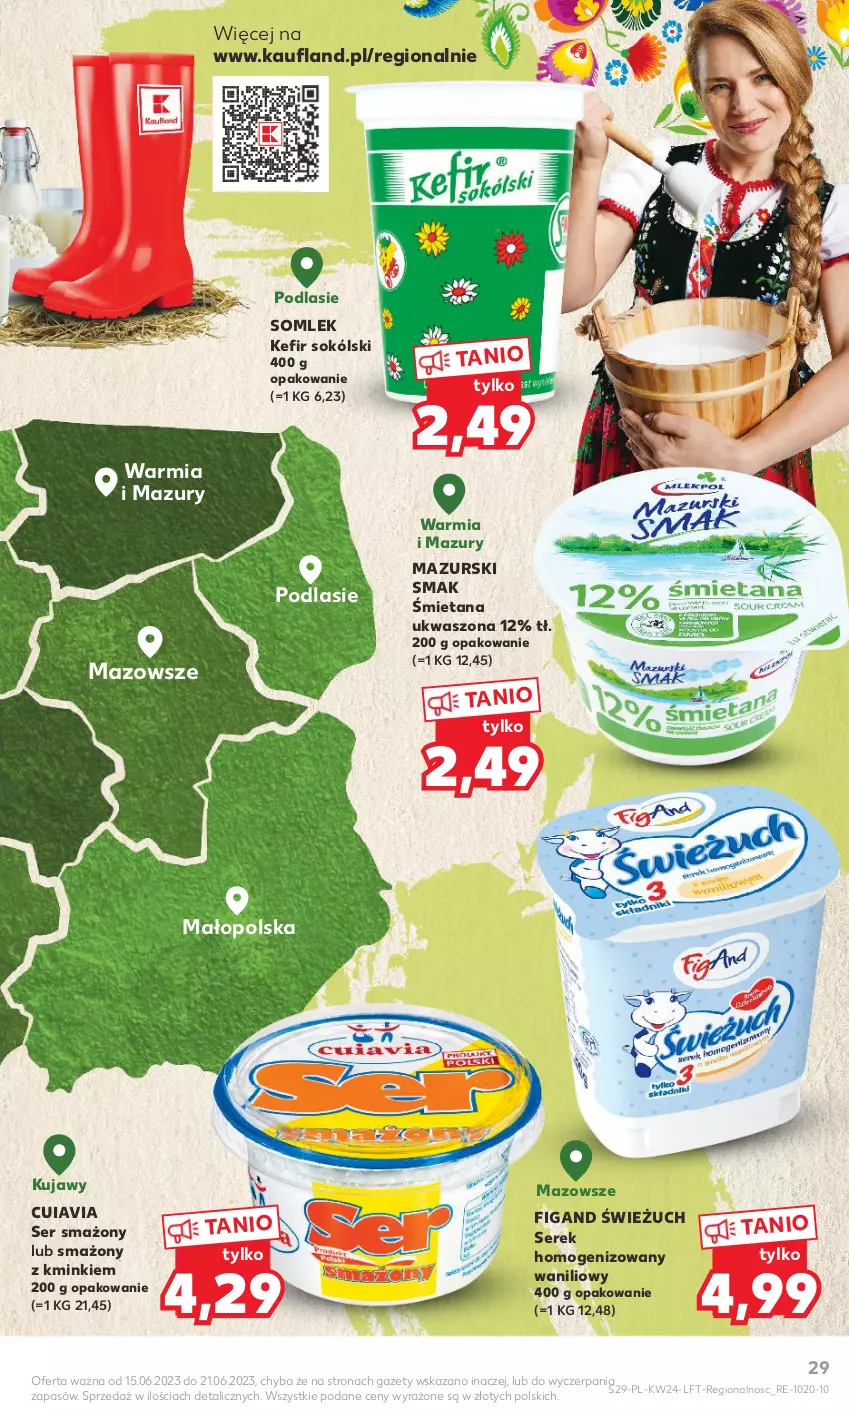 Gazetka promocyjna Kaufland - Gazetka tygodnia - ważna 15.06 do 21.06.2023 - strona 29 - produkty: Kefir, Ser, Serek, Serek homogenizowany, Sok